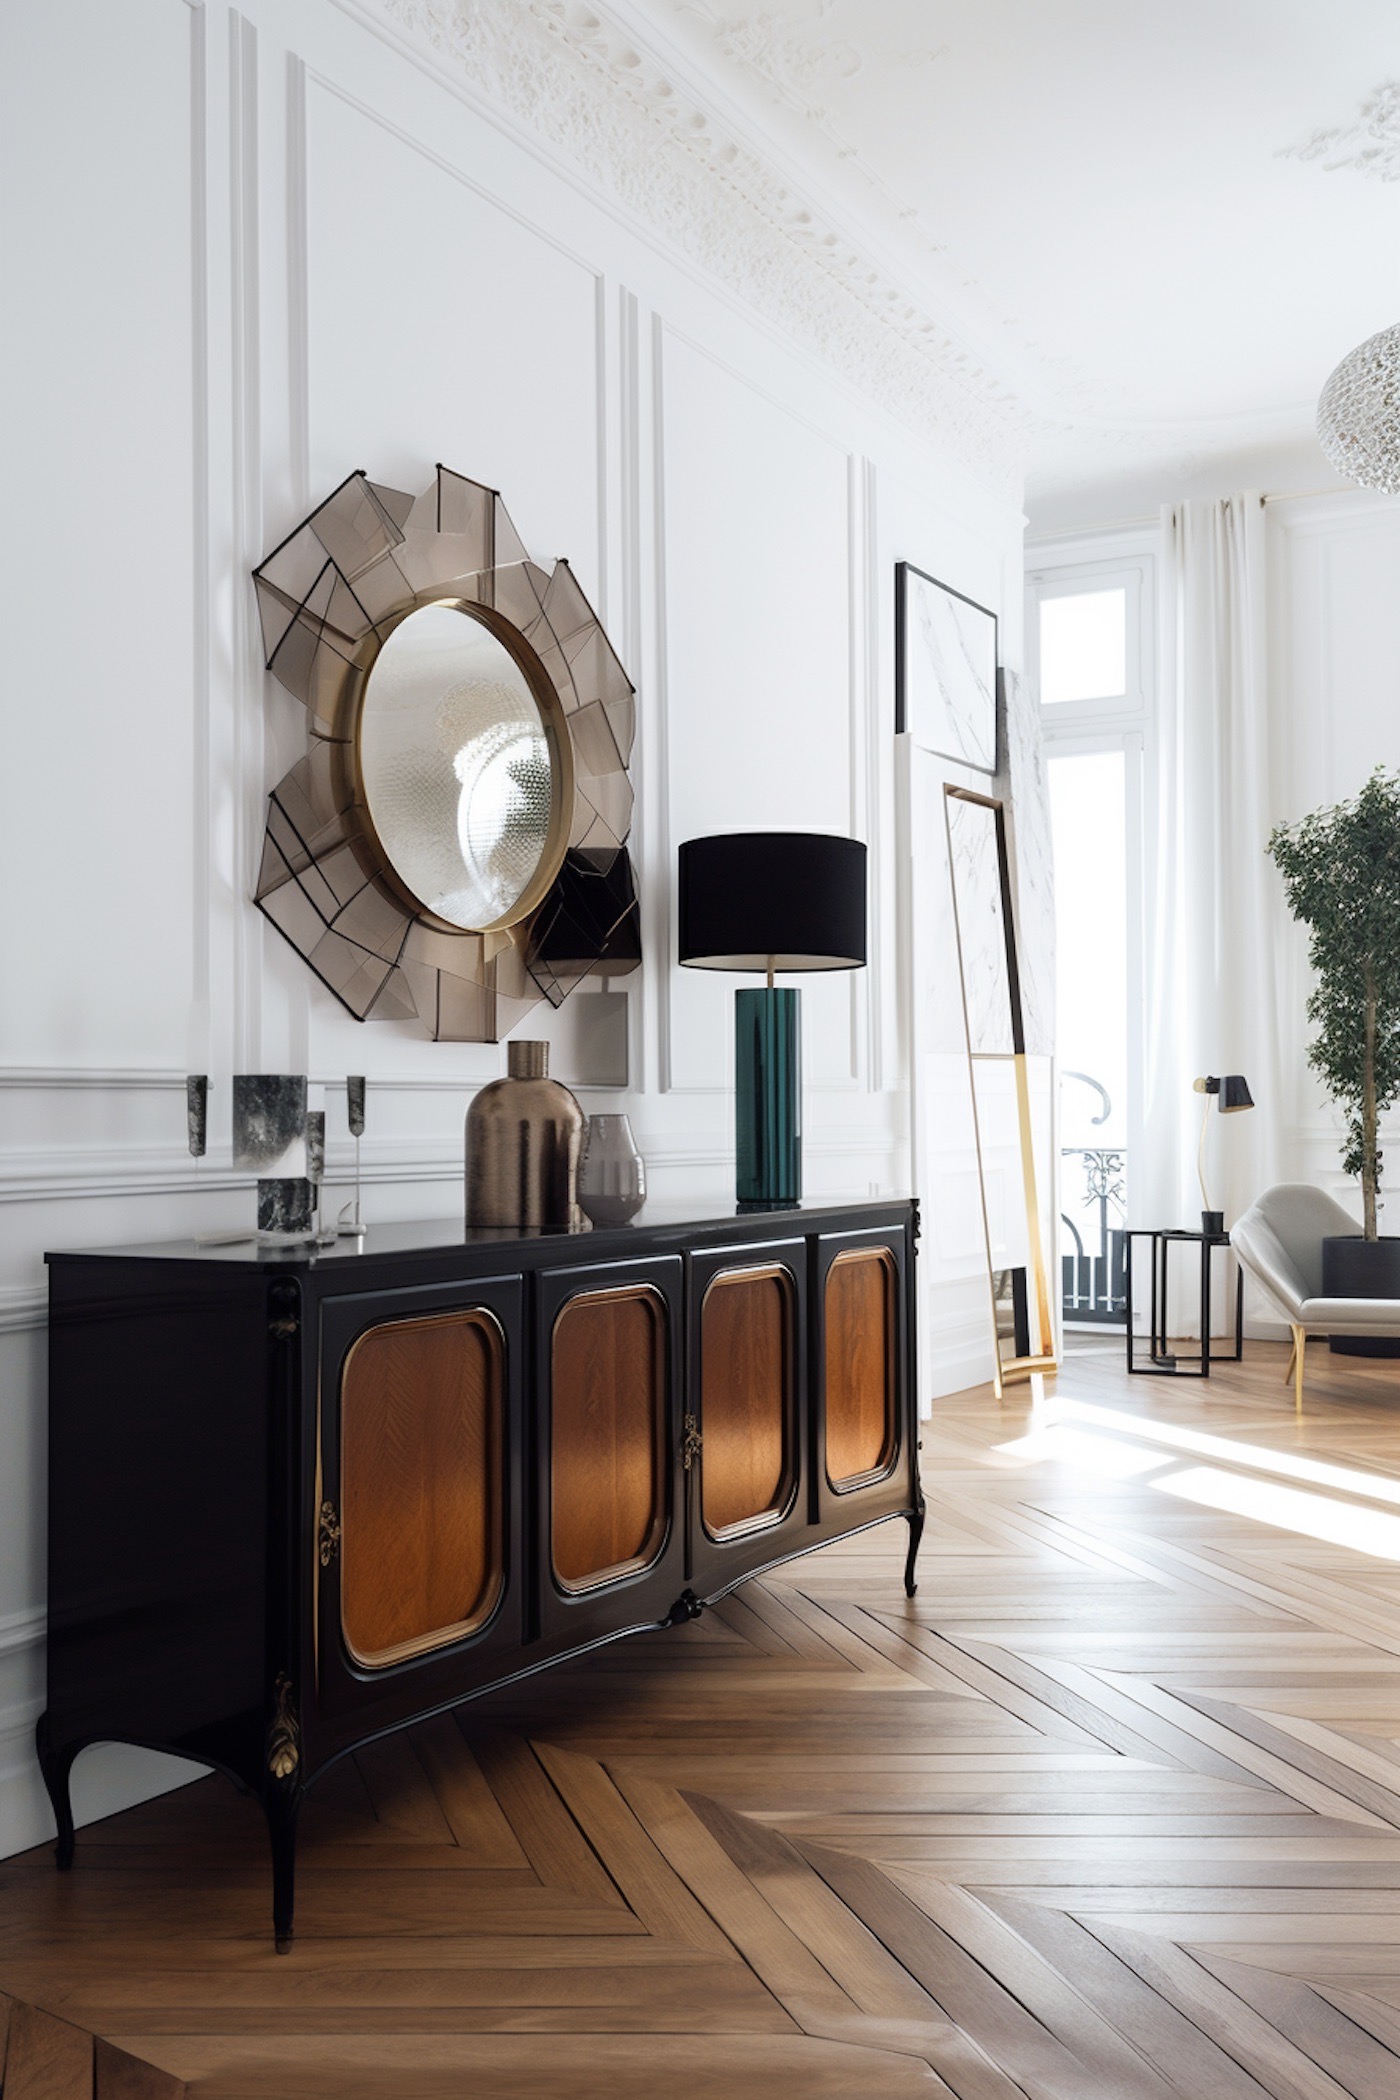 meuble Boulle Louis XIV intérieur moderne mélange style parisien